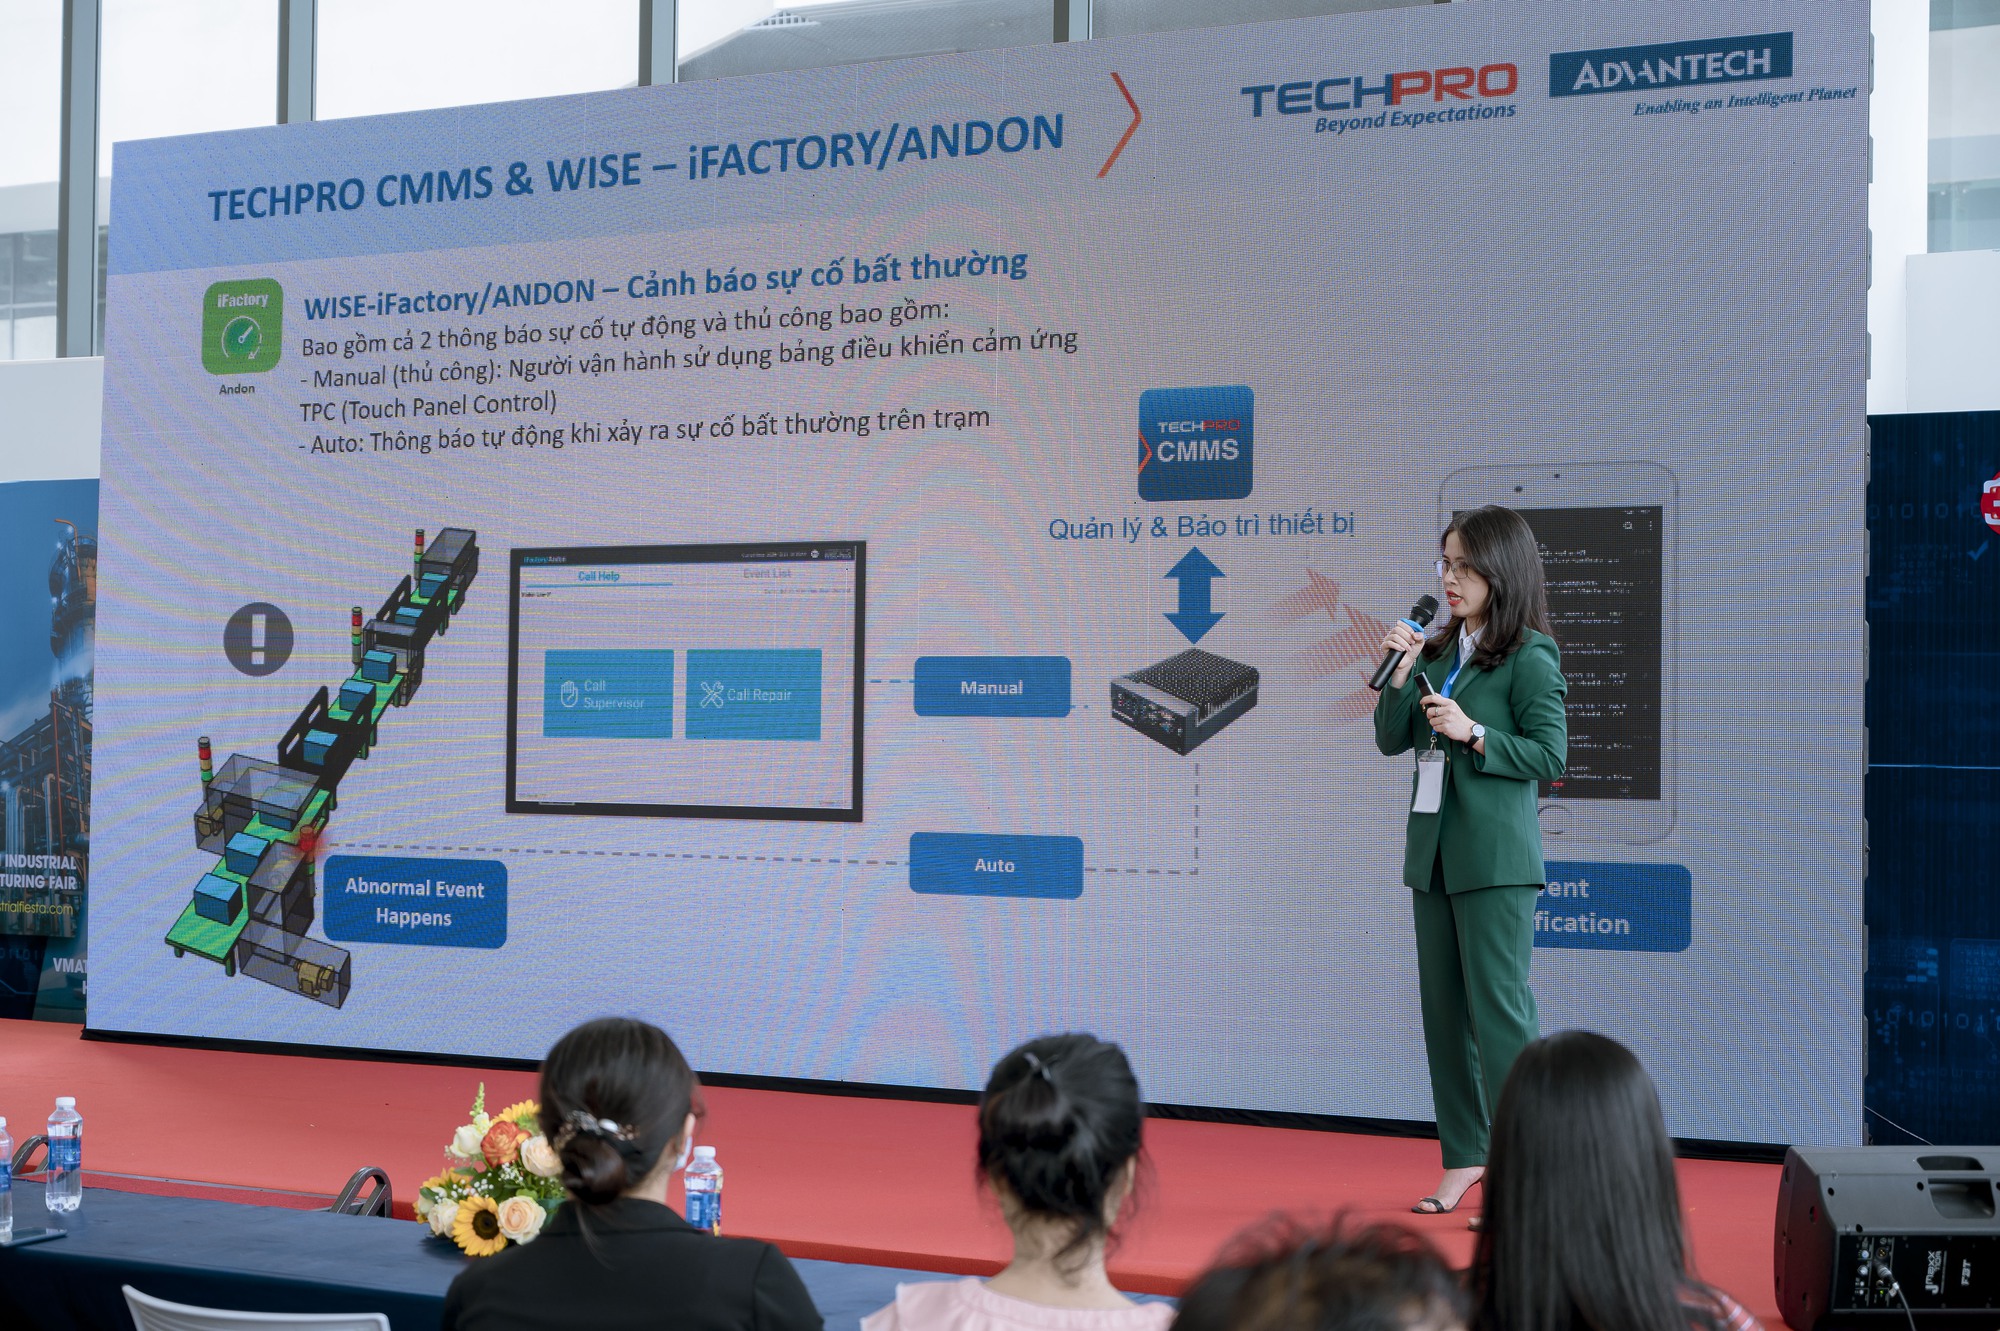 Techpro trình diễn bộ giải pháp chuyển đổi số toàn diện Smart Factory dành cho doanh nghiệp  - Ảnh 4.